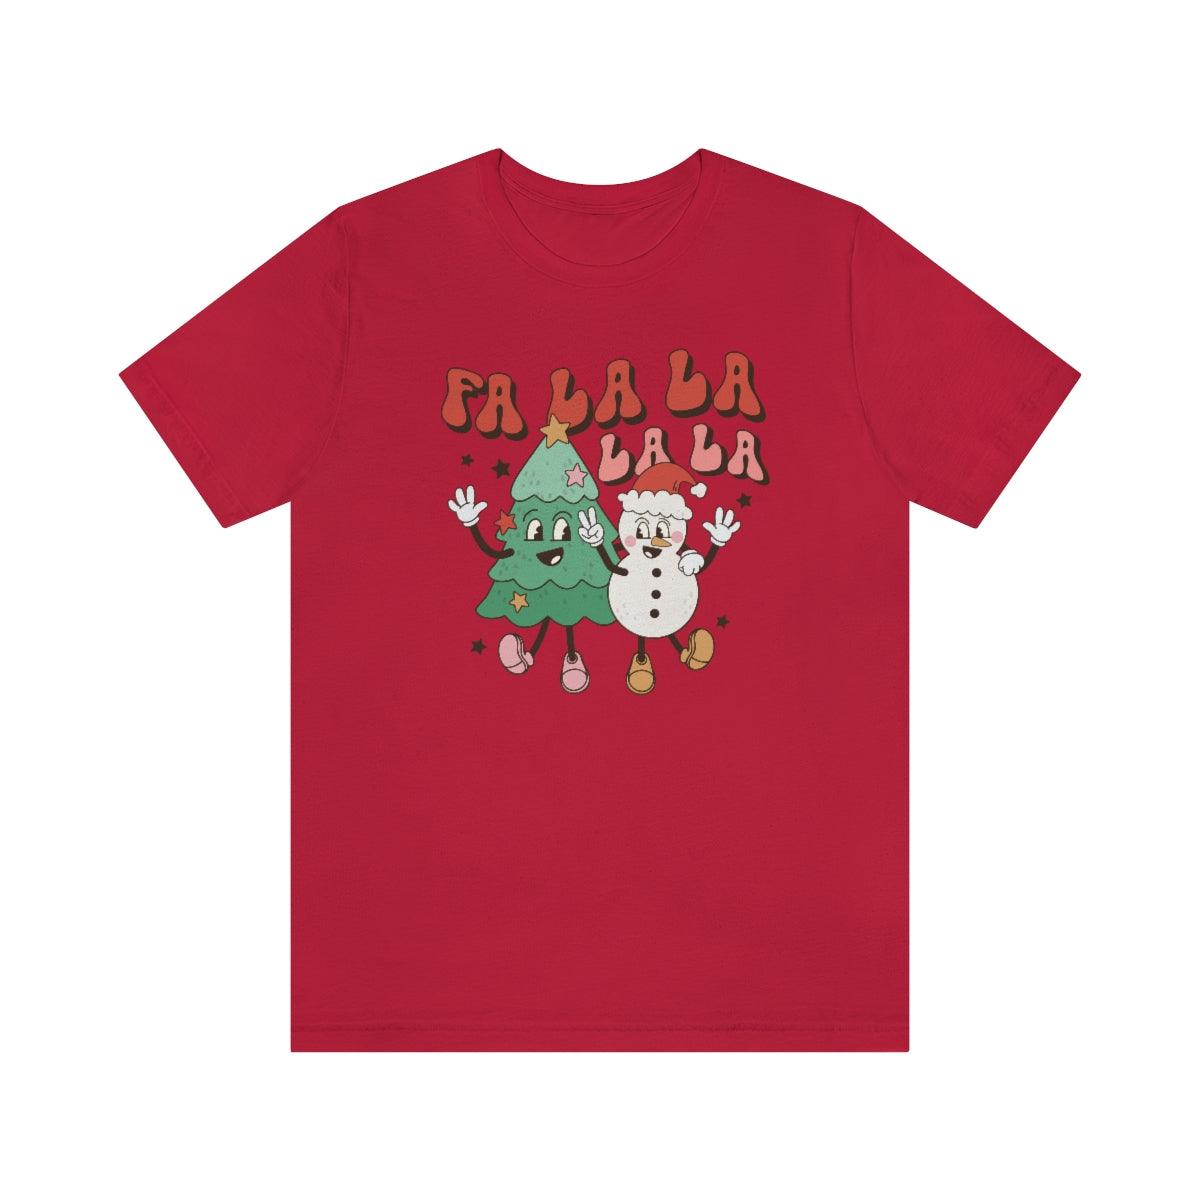 Retro Fa La La Christmas Shirt Short Sleeve Tee - Crystal Rose Design Co.